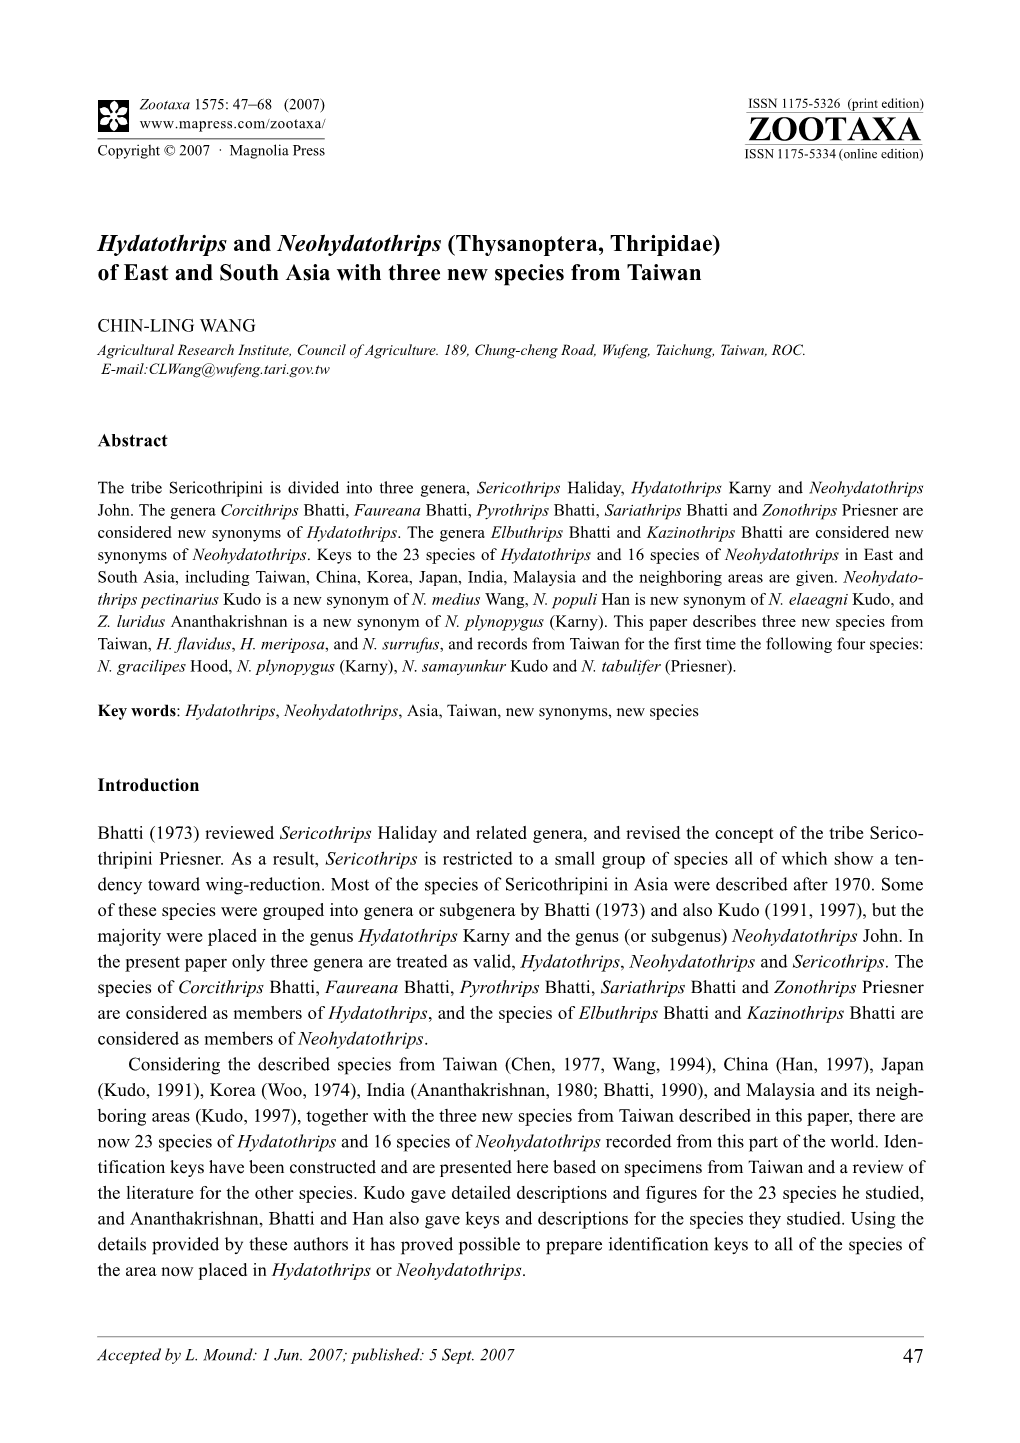 Zootaxa,Hydatothrips and Neohydatothrips (Thysanoptera, Thripidae)